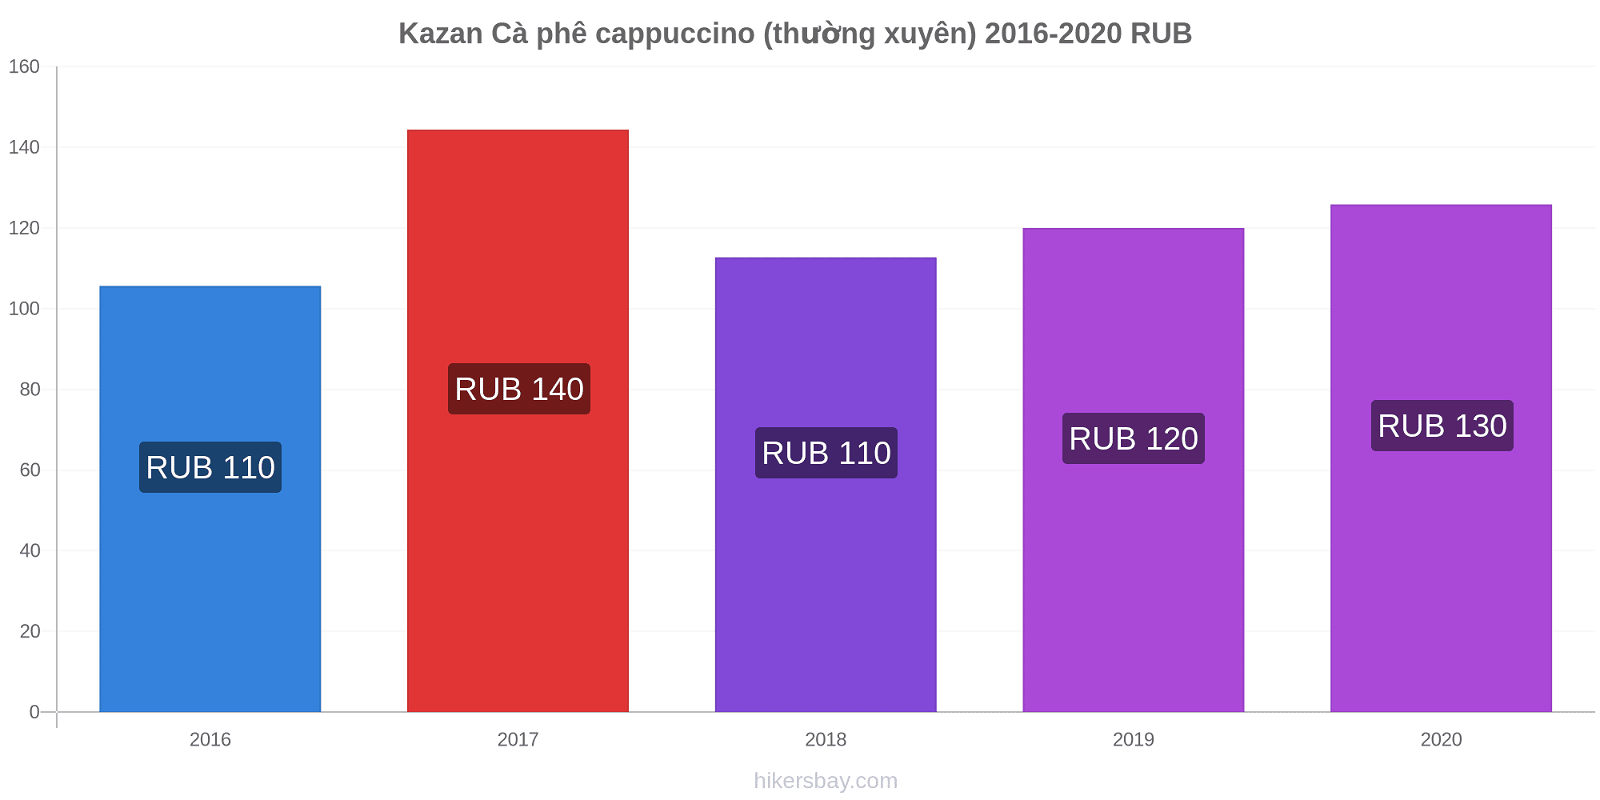 Kazan thay đổi giá Cà phê cappuccino (thường xuyên) hikersbay.com